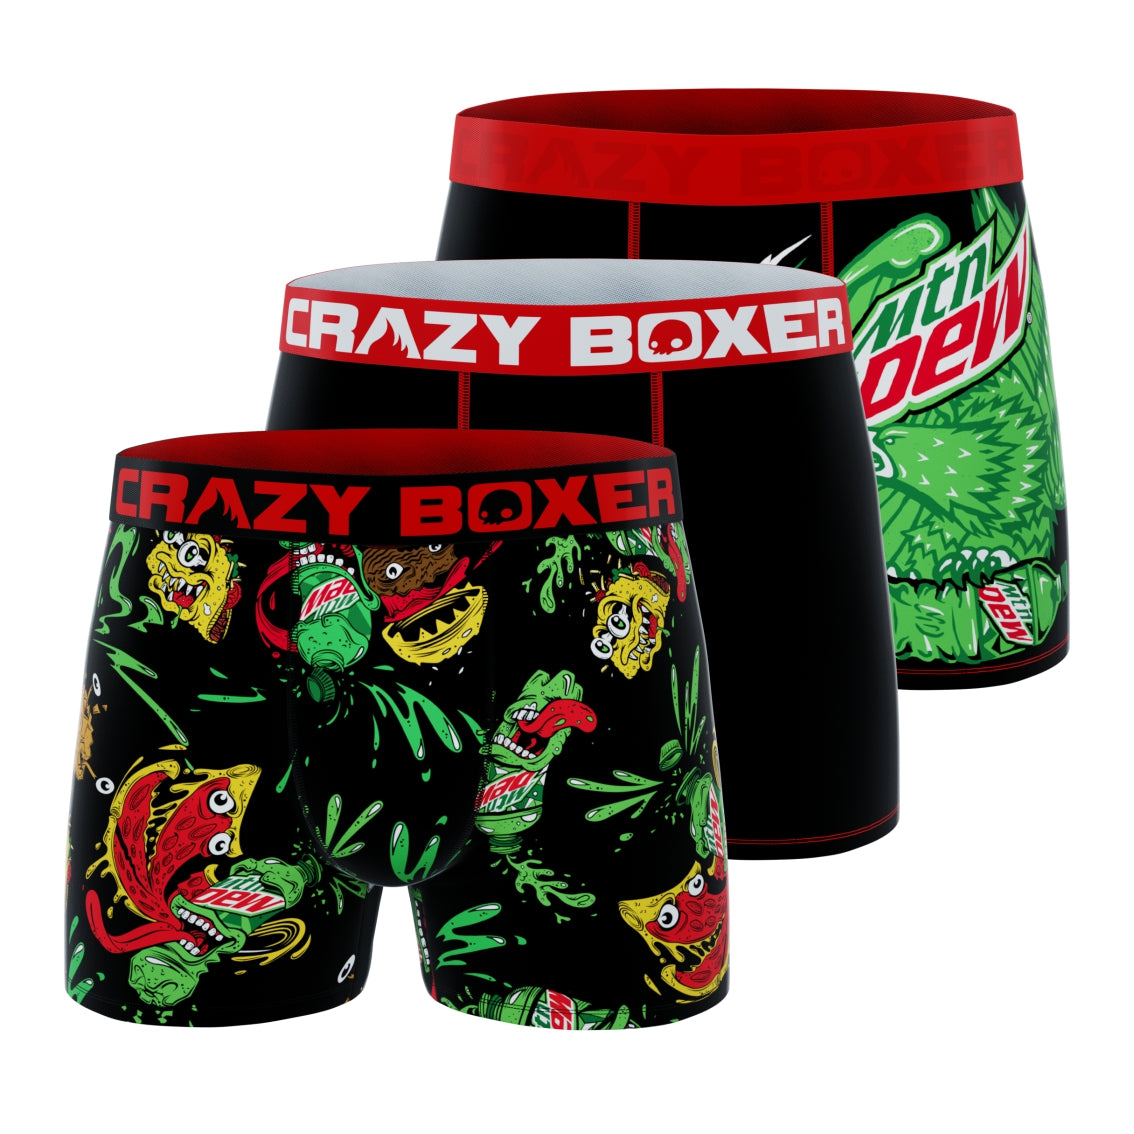 CRAZYBOXER Fruit Ninja All Over Men's Boxer Briefs (3 pack)